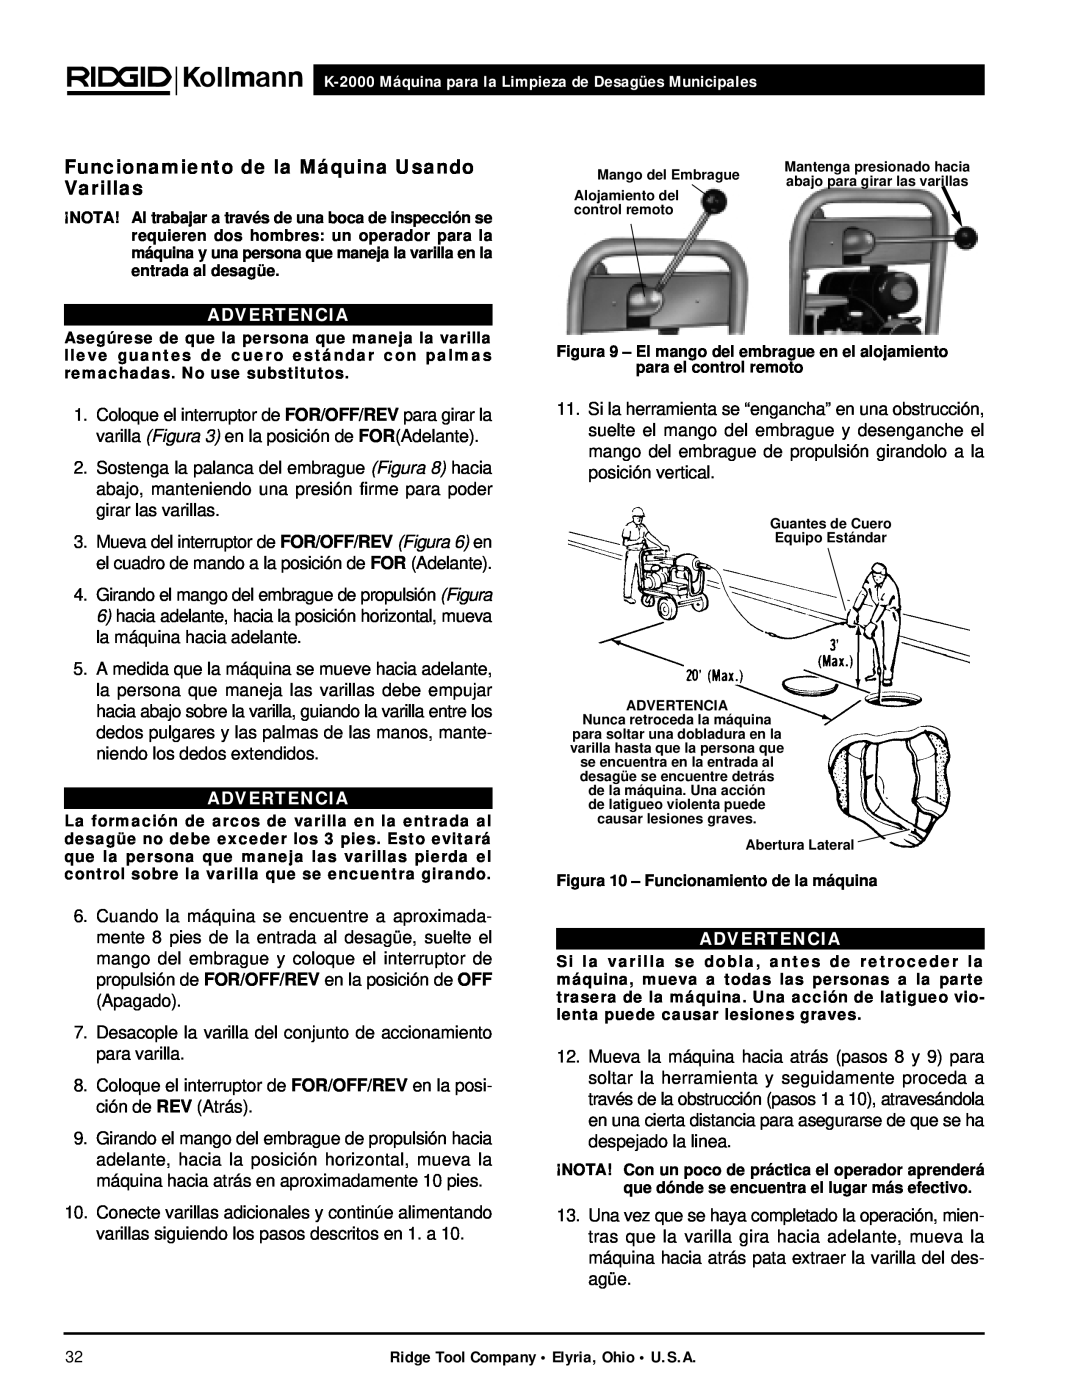 RIDGID manual Funcionamiento de la Máquina Usando Varillas, K-2000 Máquina para la Limpieza de Desagües Municipales 